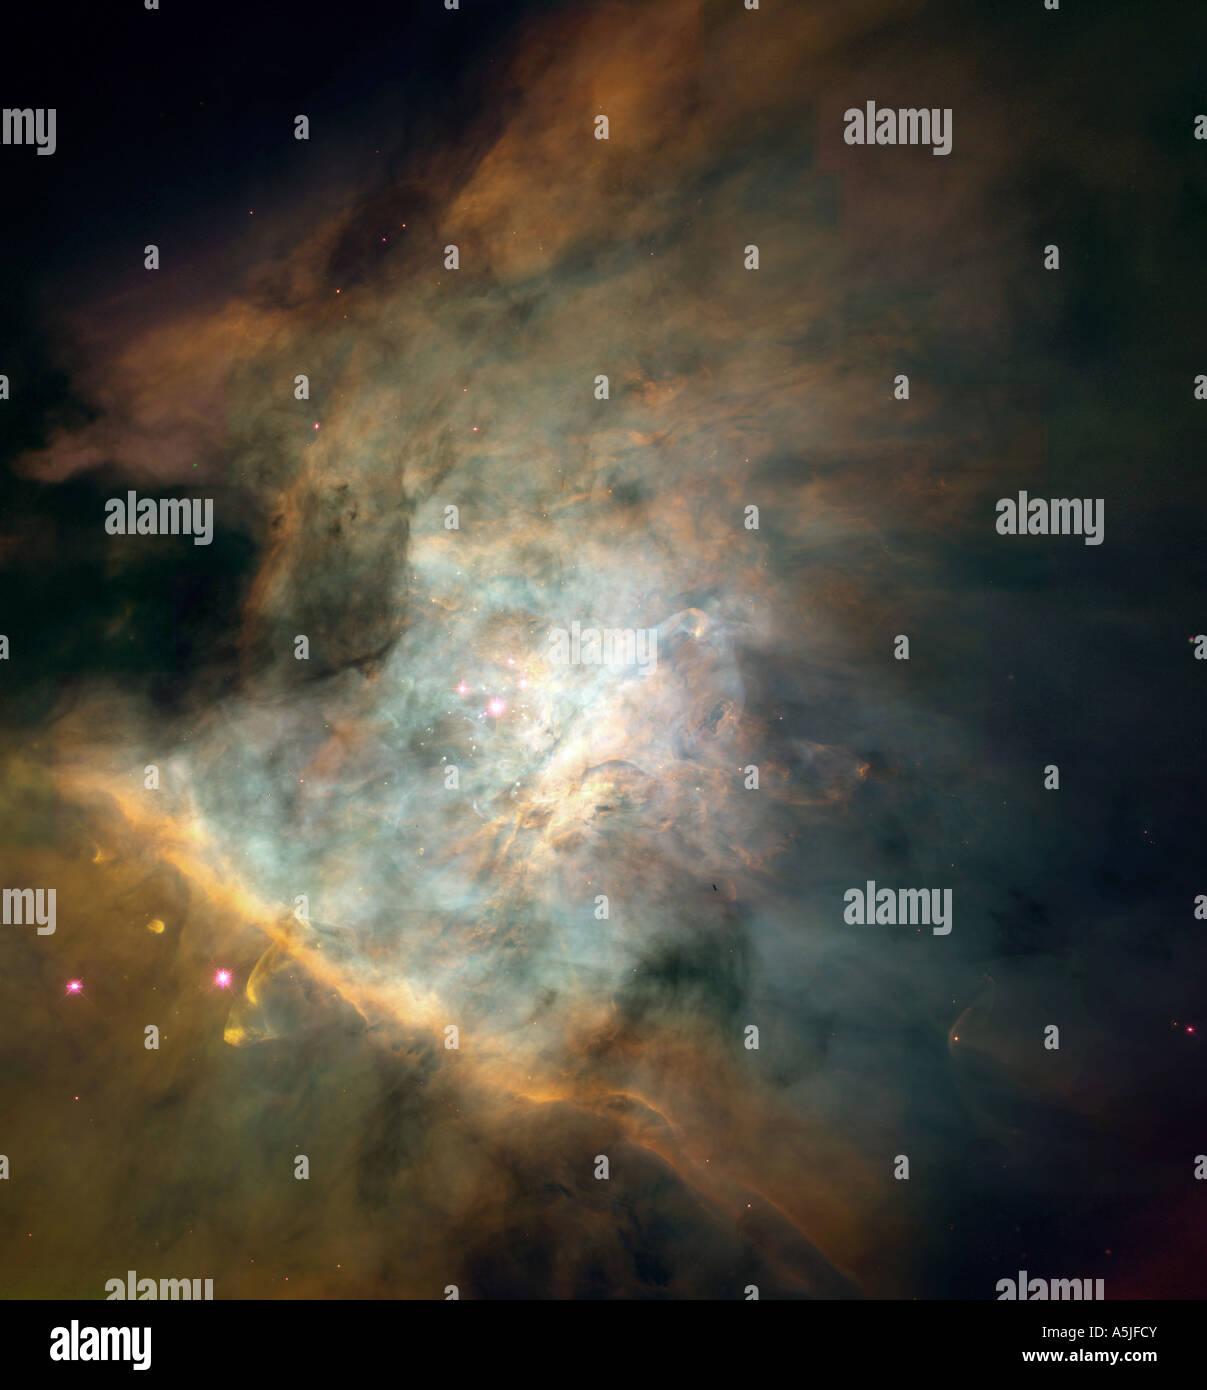 Zentrum des Orionnebels zusammengesetzt aus Einzelbildern aufgenommen mit dem Hubble-Weltraumteleskop der NASA. Stockfoto